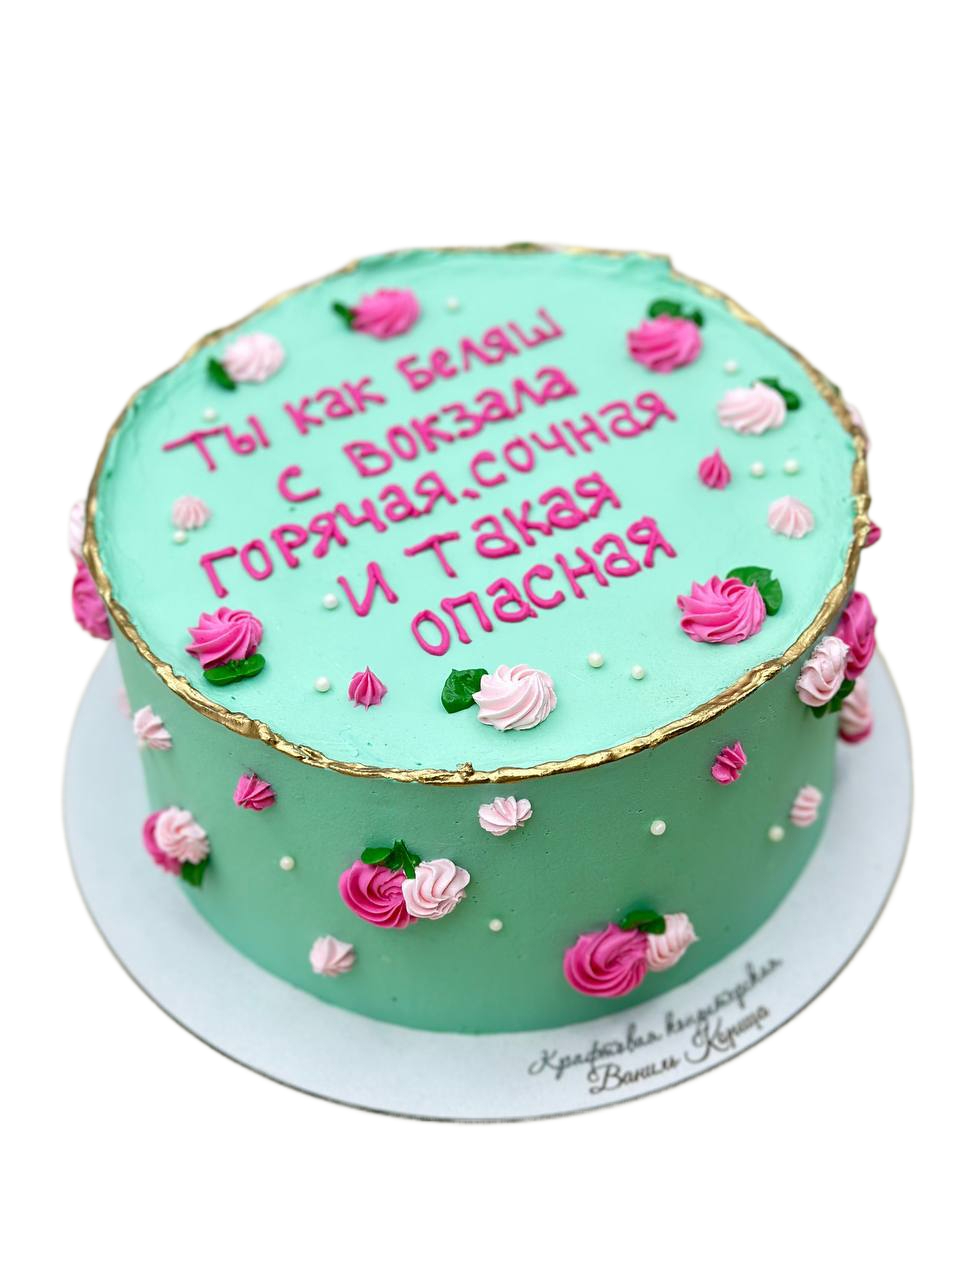 Торт поздравление Молочная девочка 188 в кондитерской cake64.ru фото